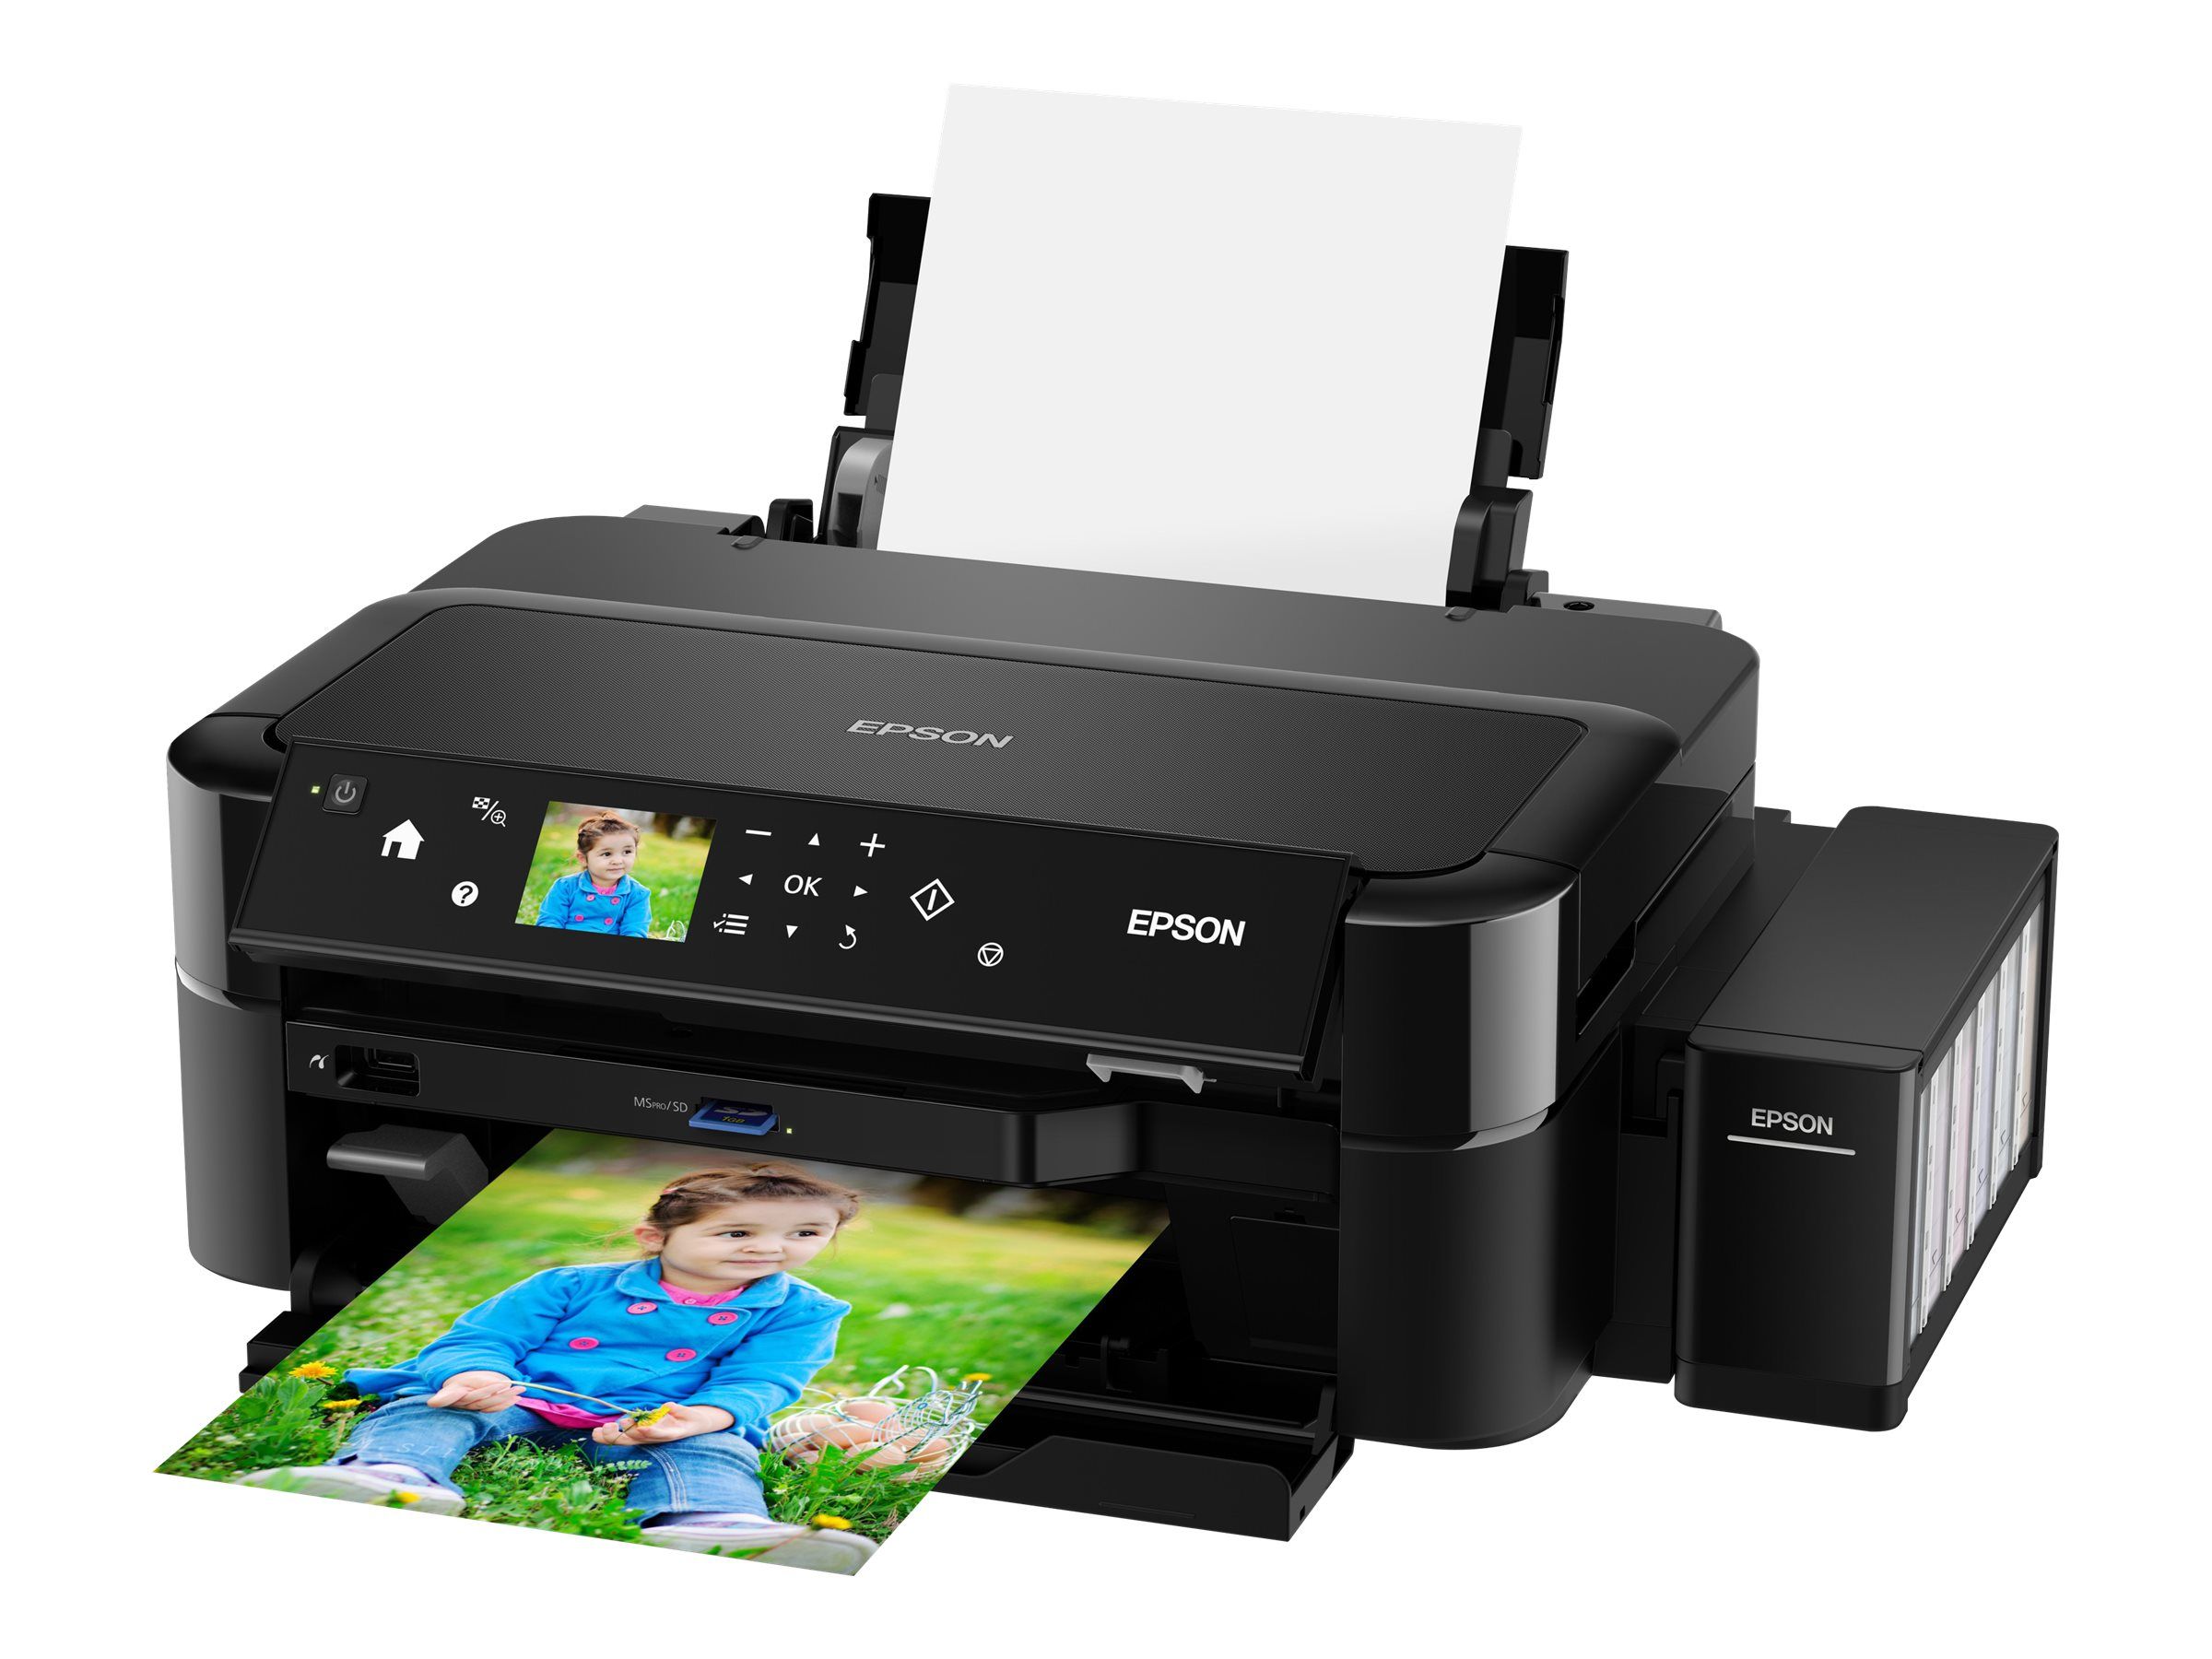 Купить принтер в м видео. Принтер струйный Epson l810. МФУ a4 Epson l850. Epson l810 (c11ce32402). Принтер Epson l810, черный.